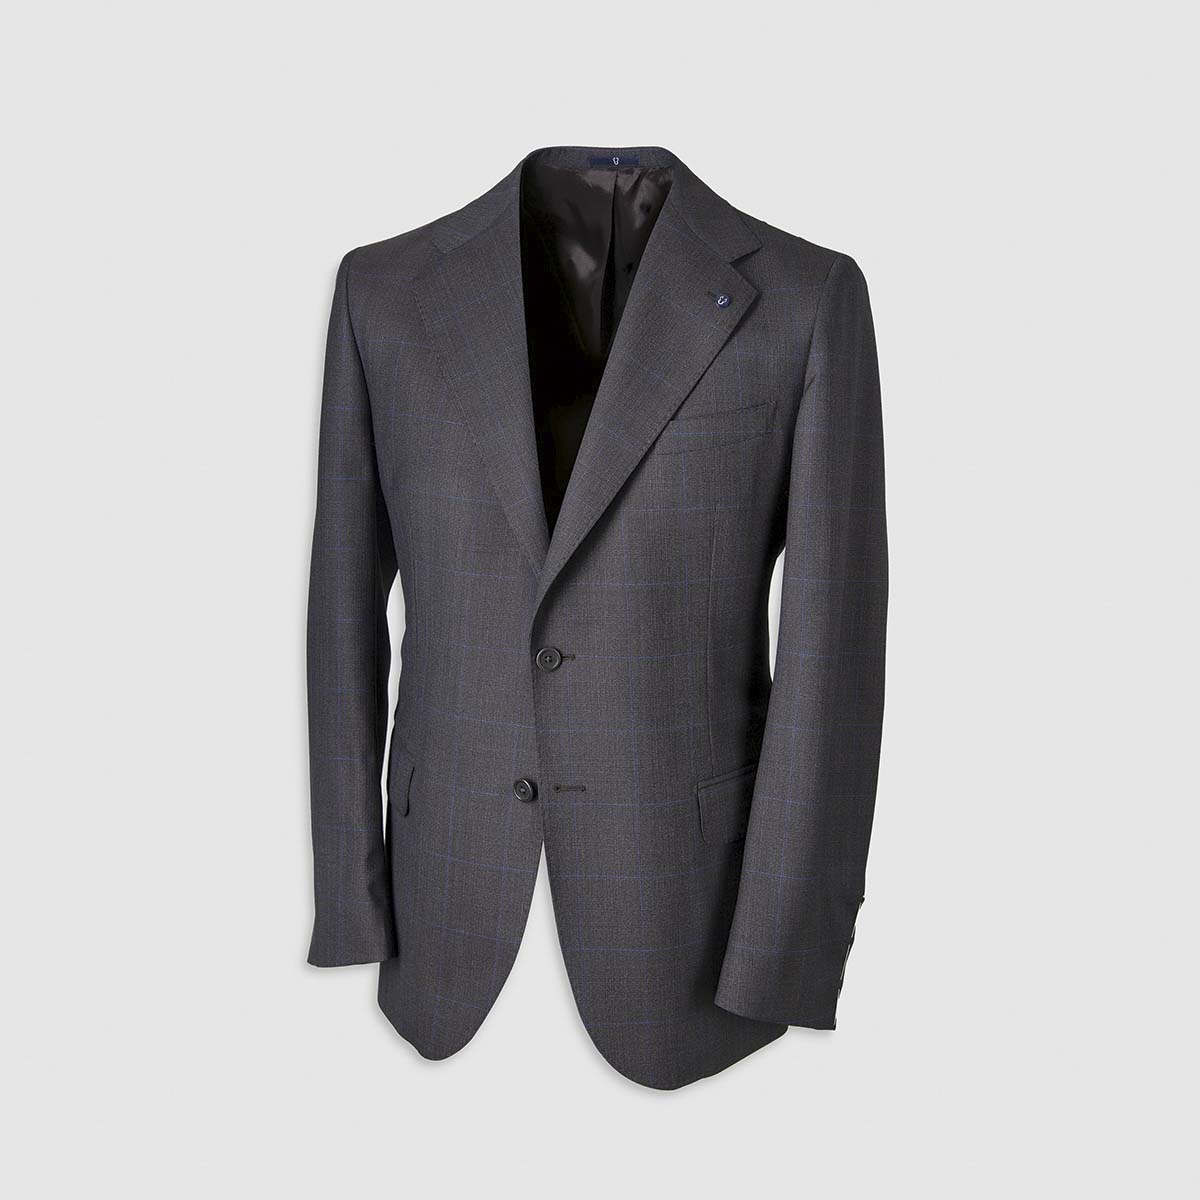 Blue Windowpane Pattern Smart Suit in 130s Four Seasons Wool Melillo 1970 on sale 2022 2